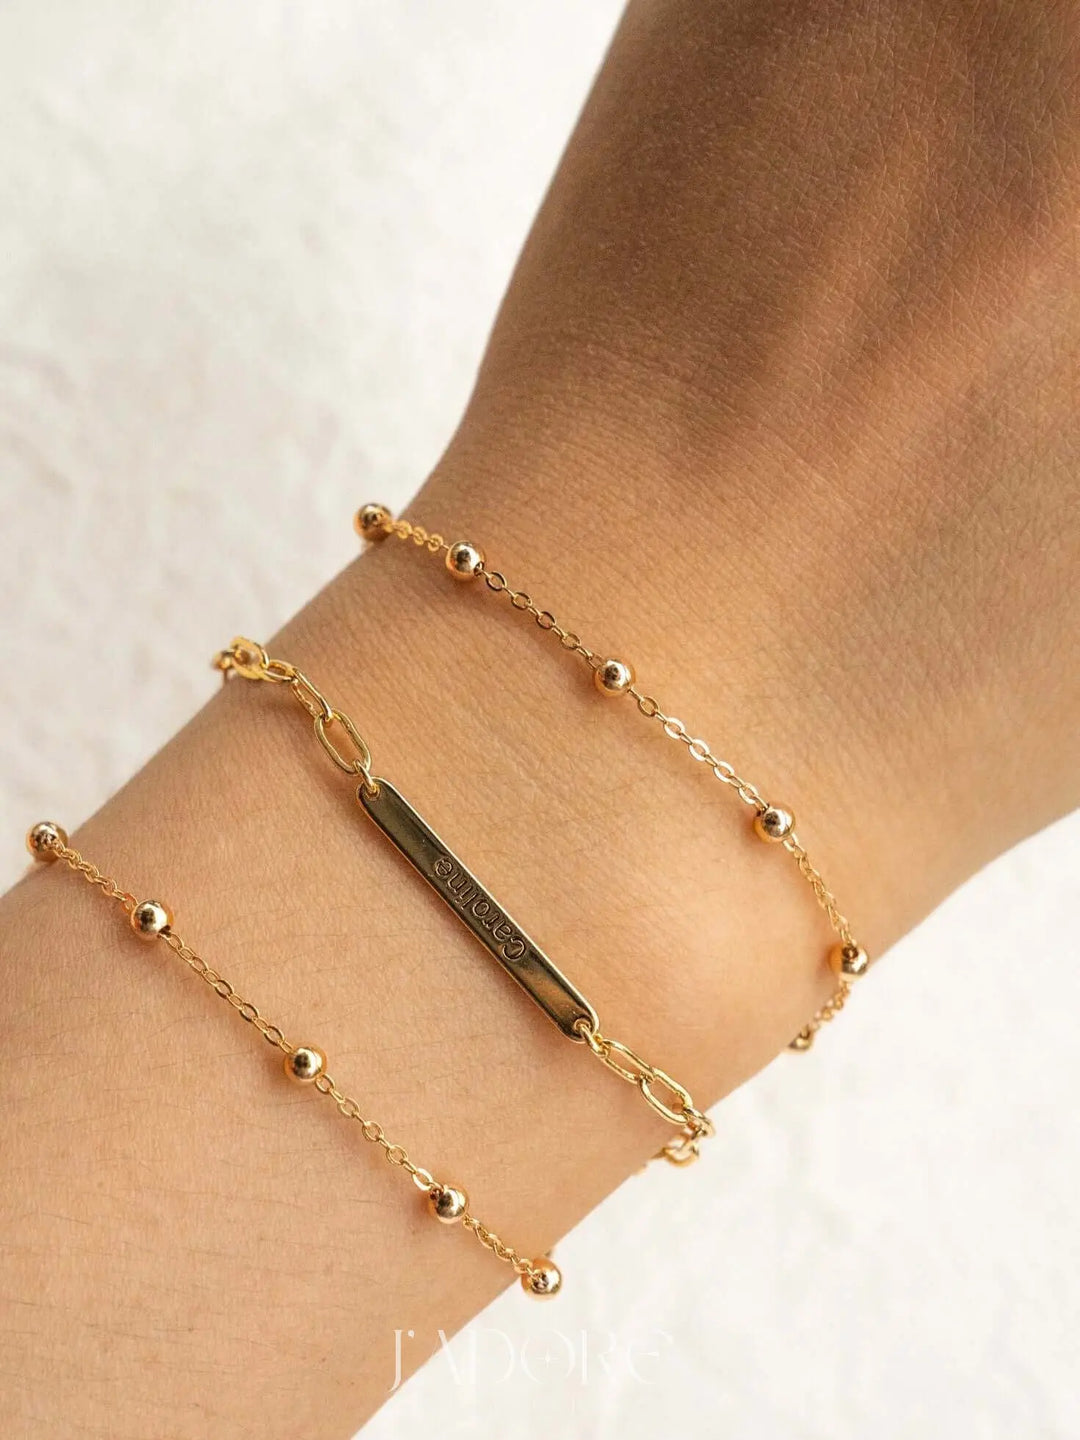 Customized Name Bracelet - J’Adore Jewelry